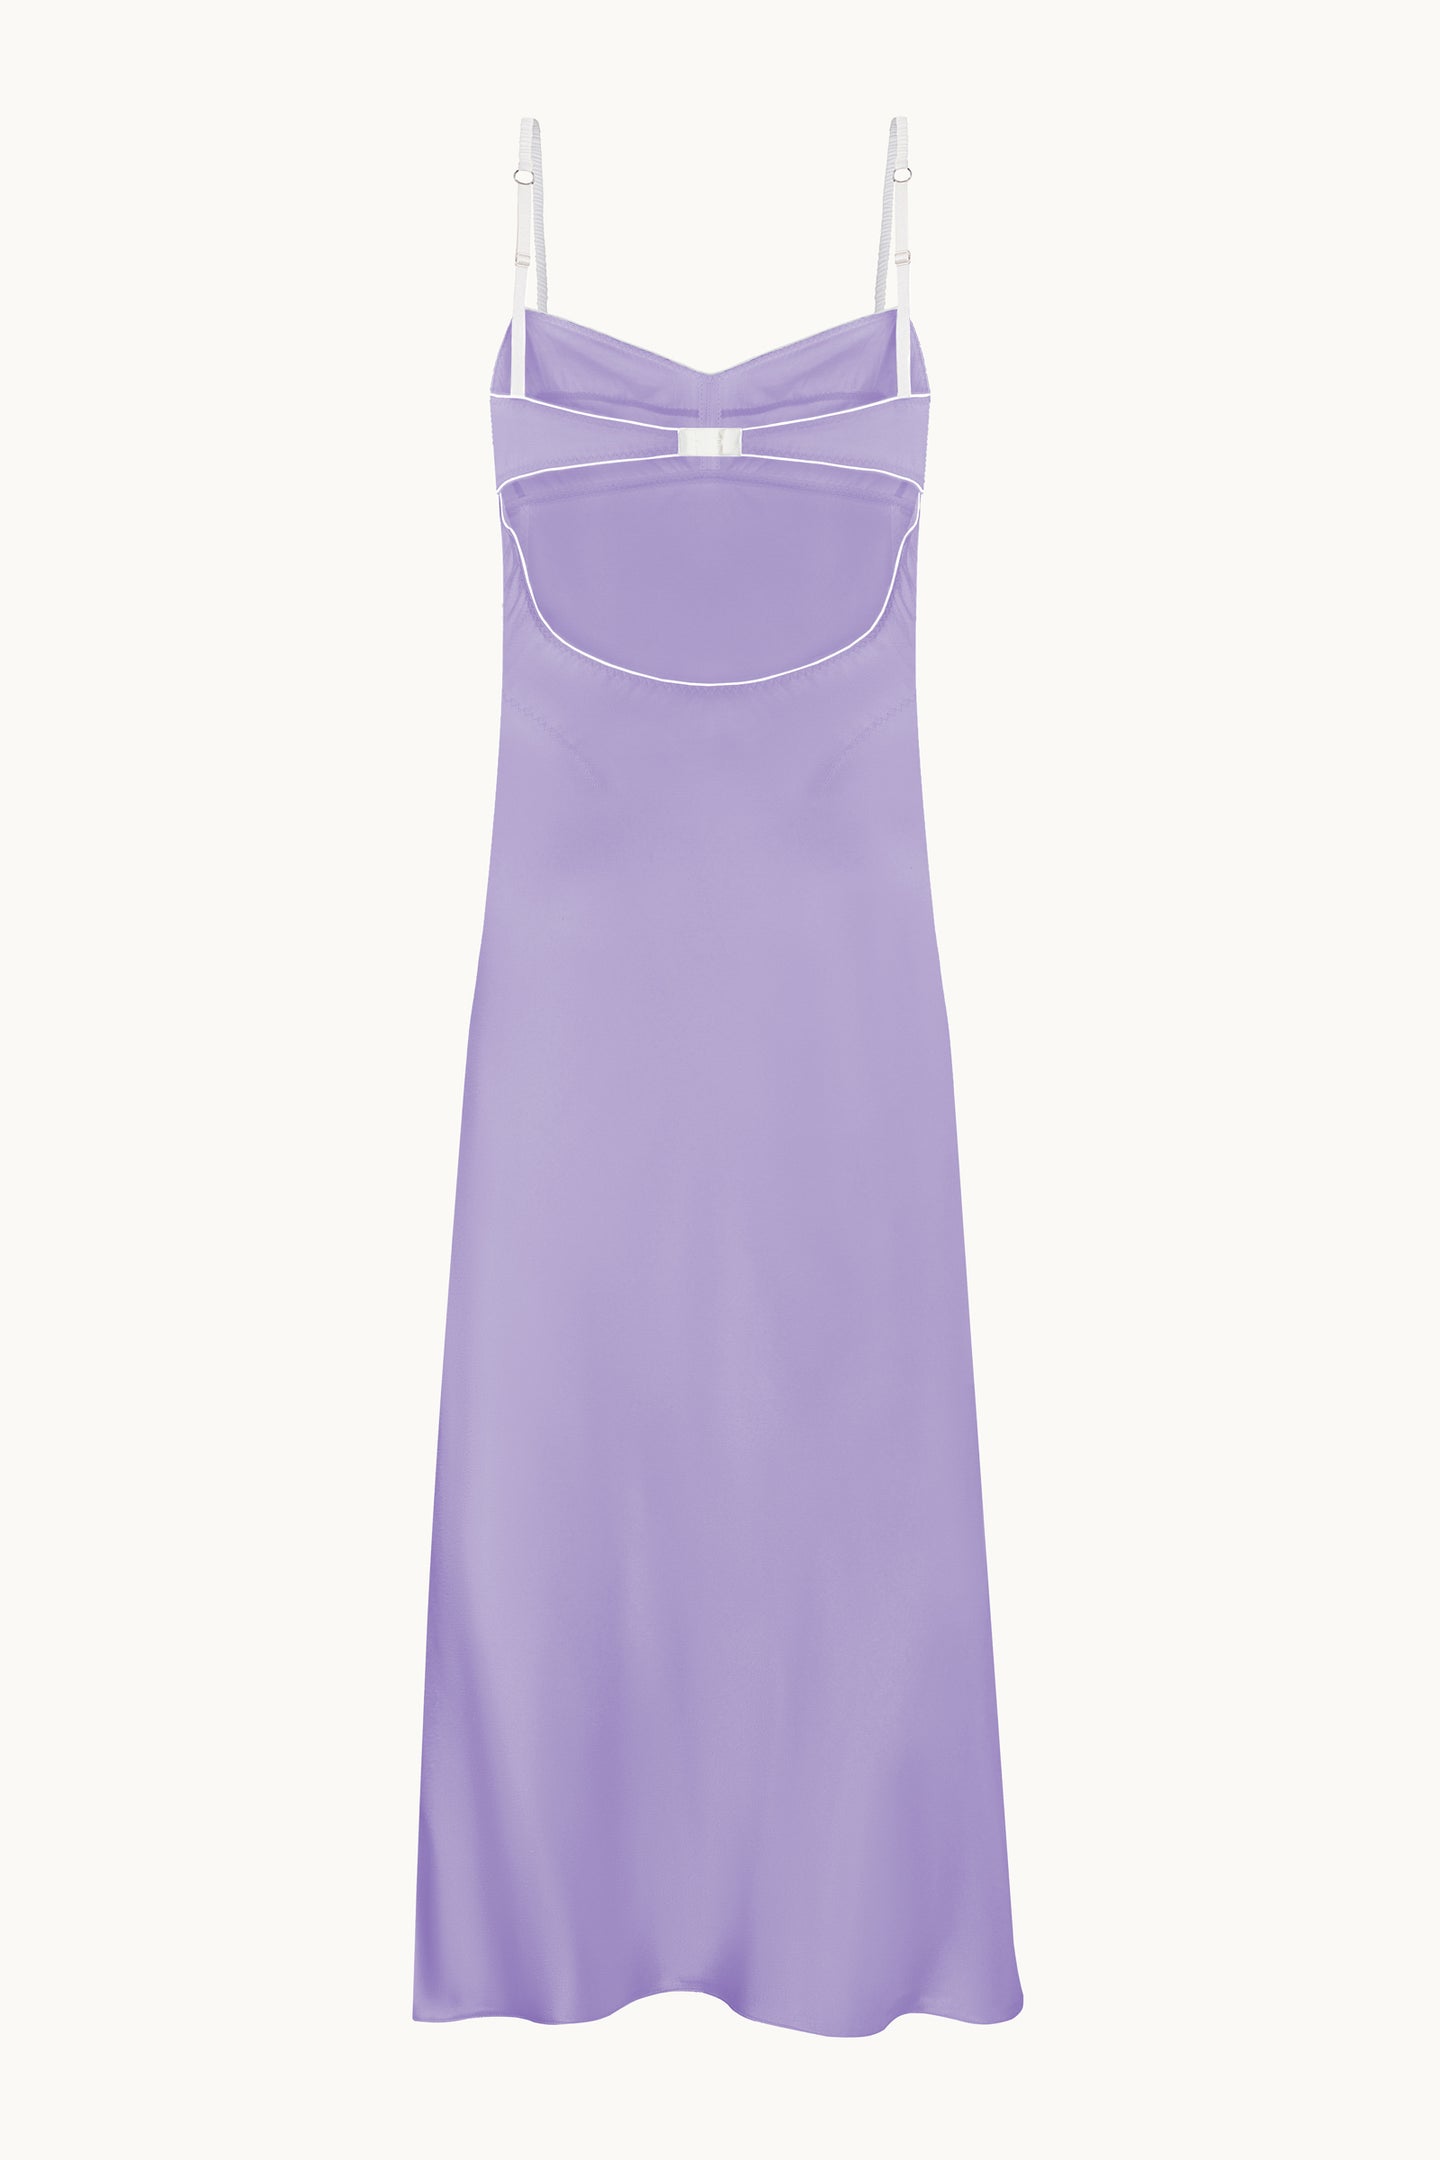 Lidi lavender dress back view